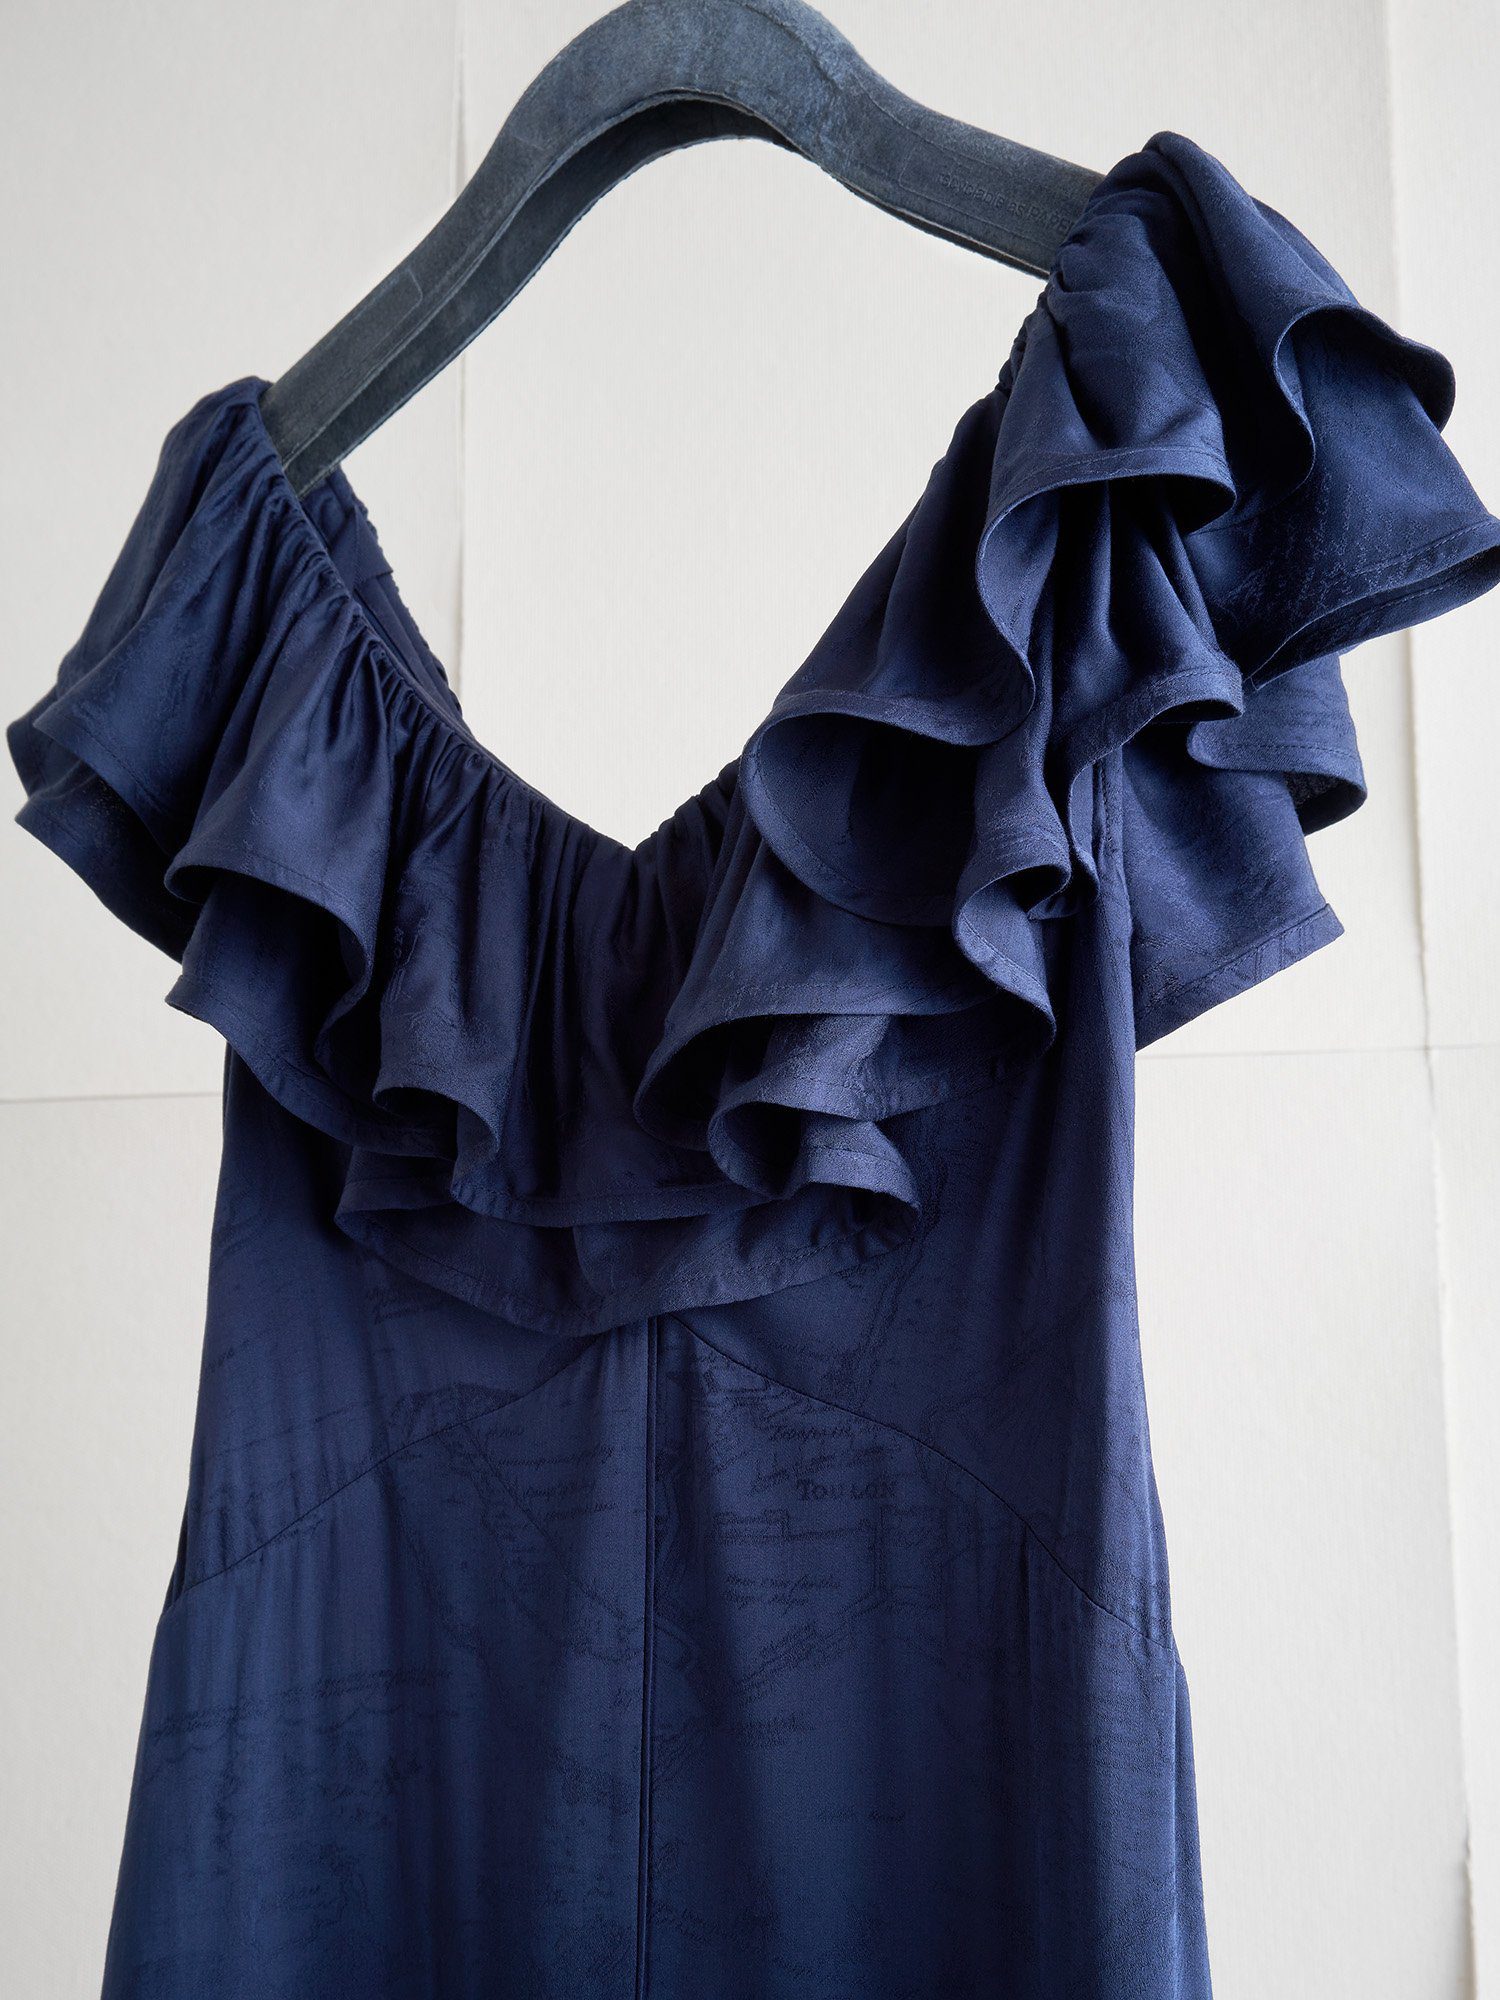 A blue dress